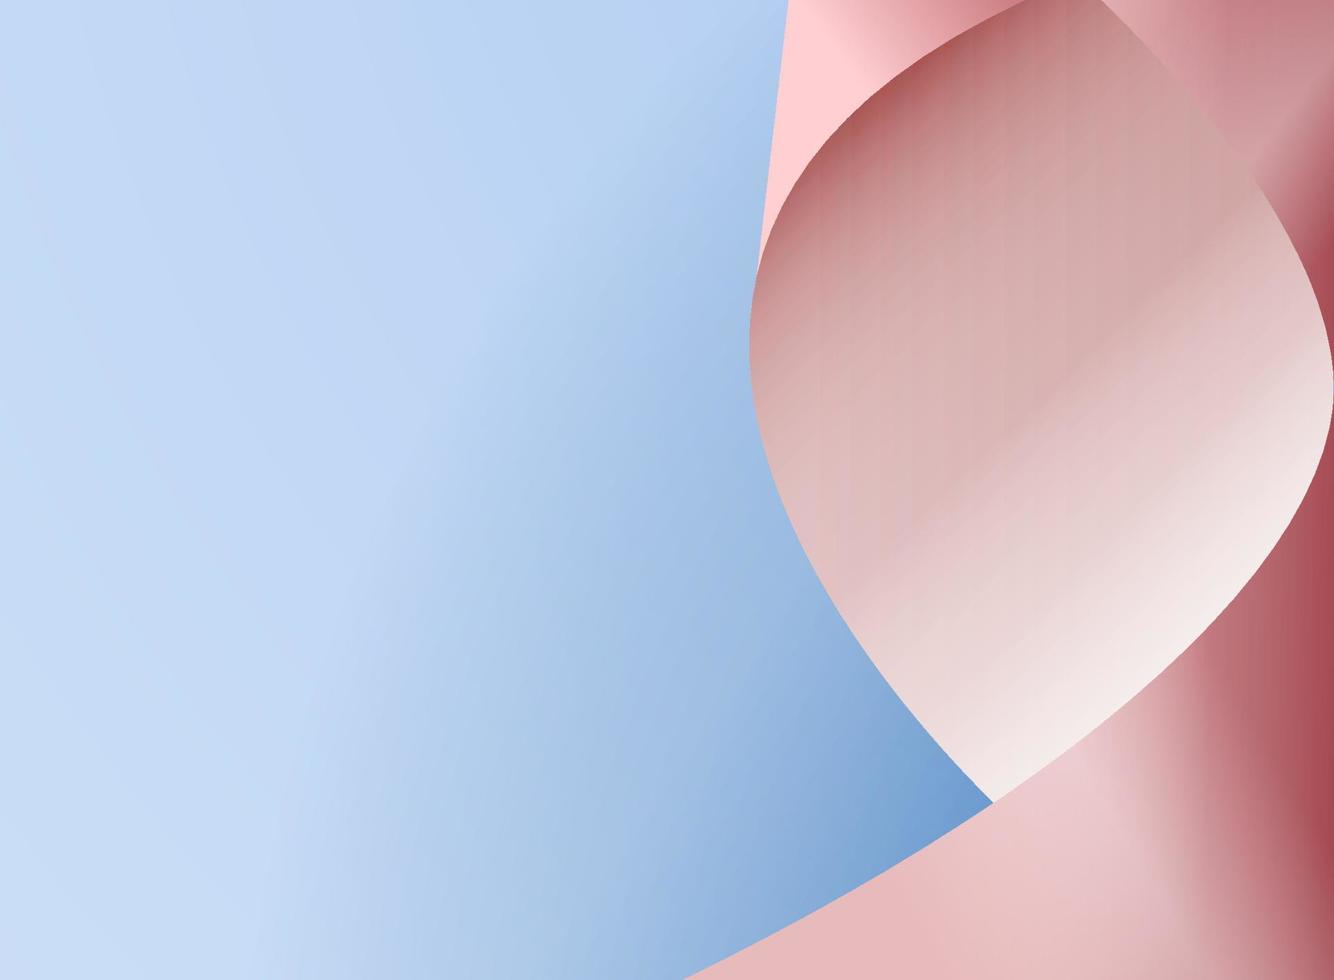 le papier feuille de vague rose vif sur une conception de vecteur de papier feuille de papier bleu clair